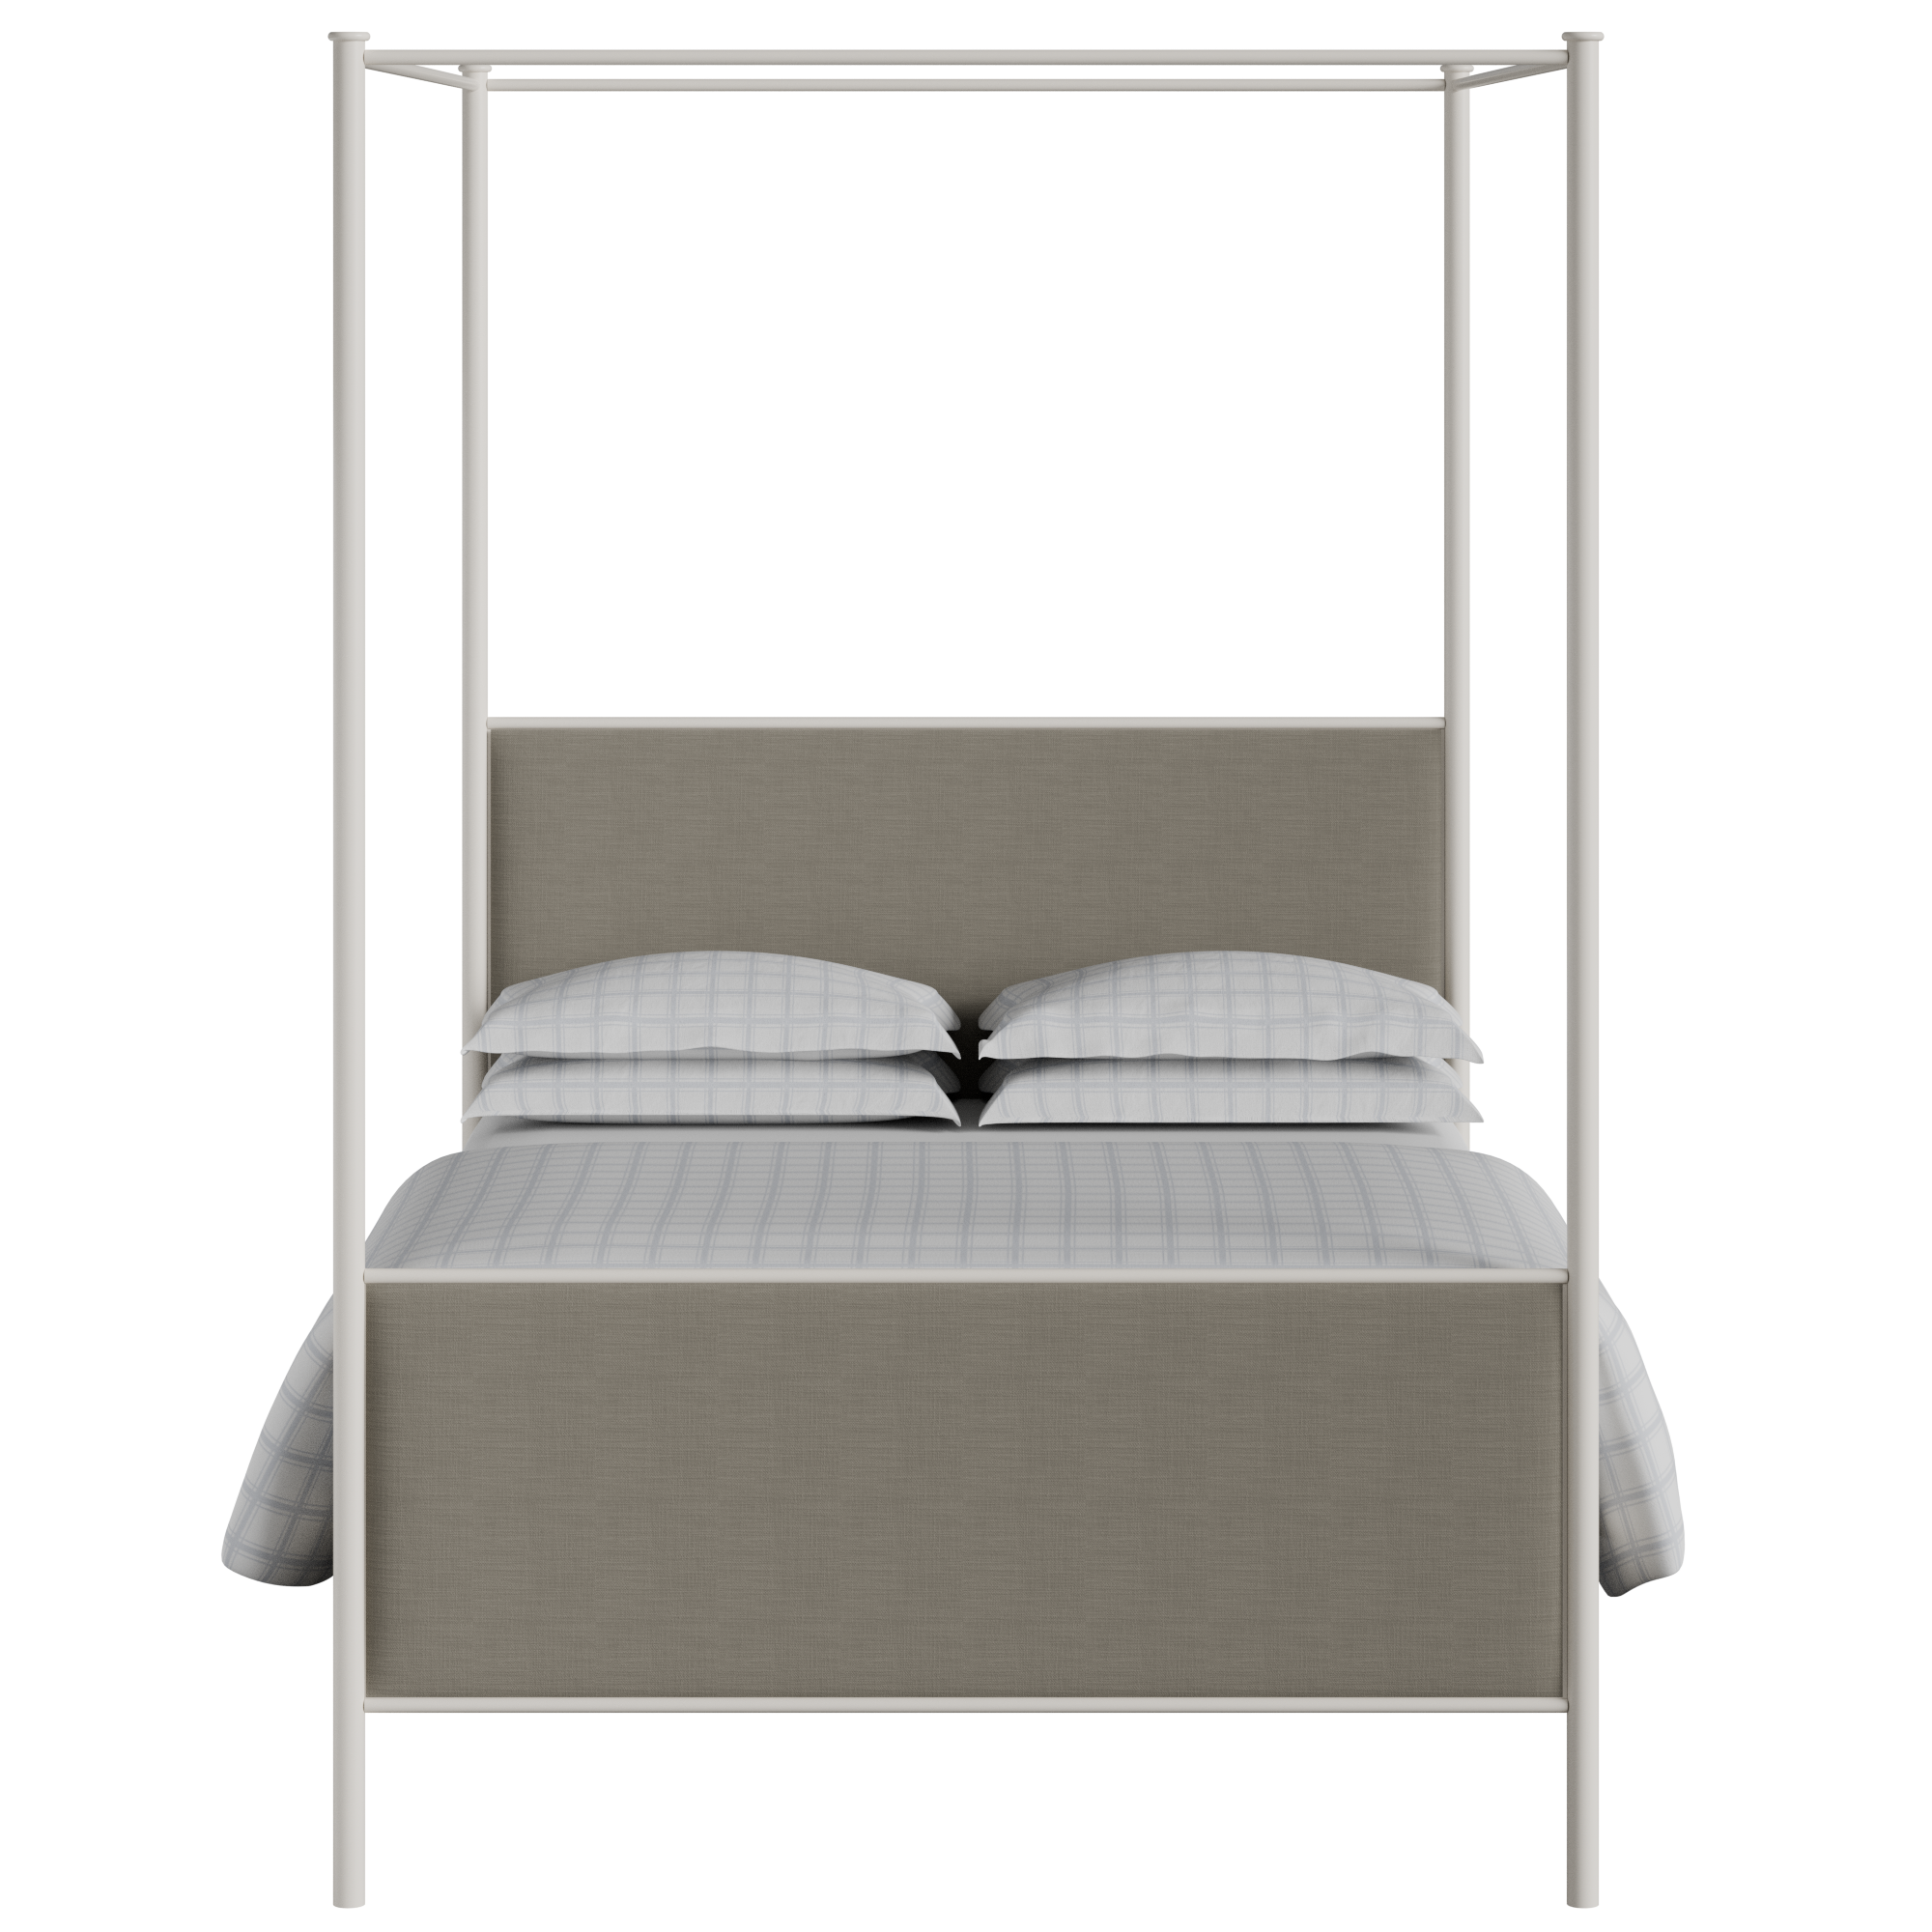 Reims cama de metal en crema con tela gris